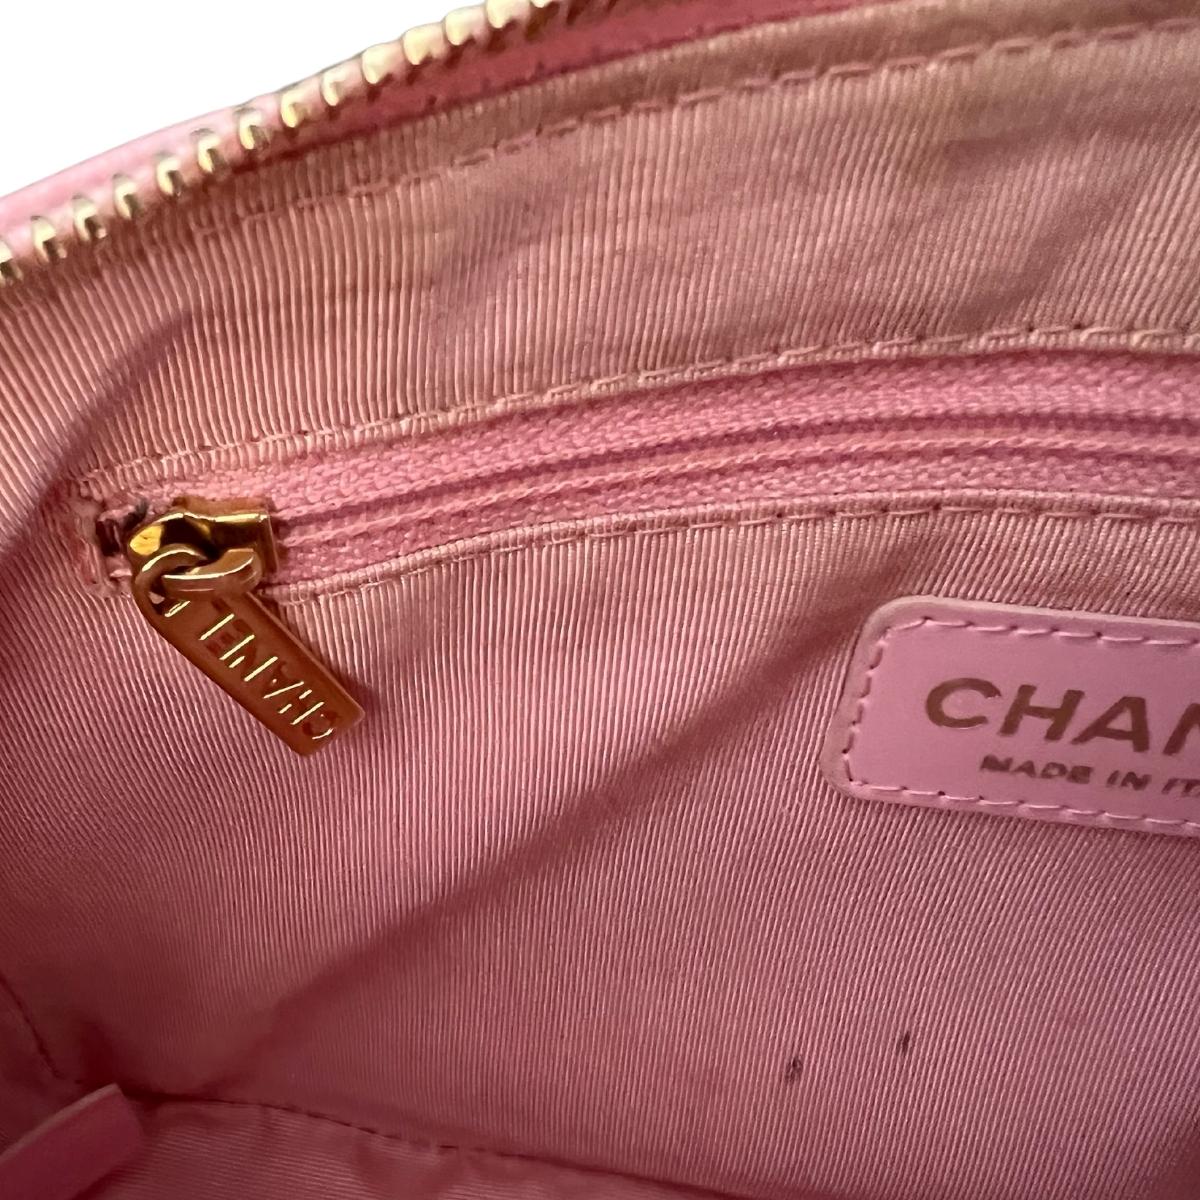 Chanel Timeless Shoulder bag 399996